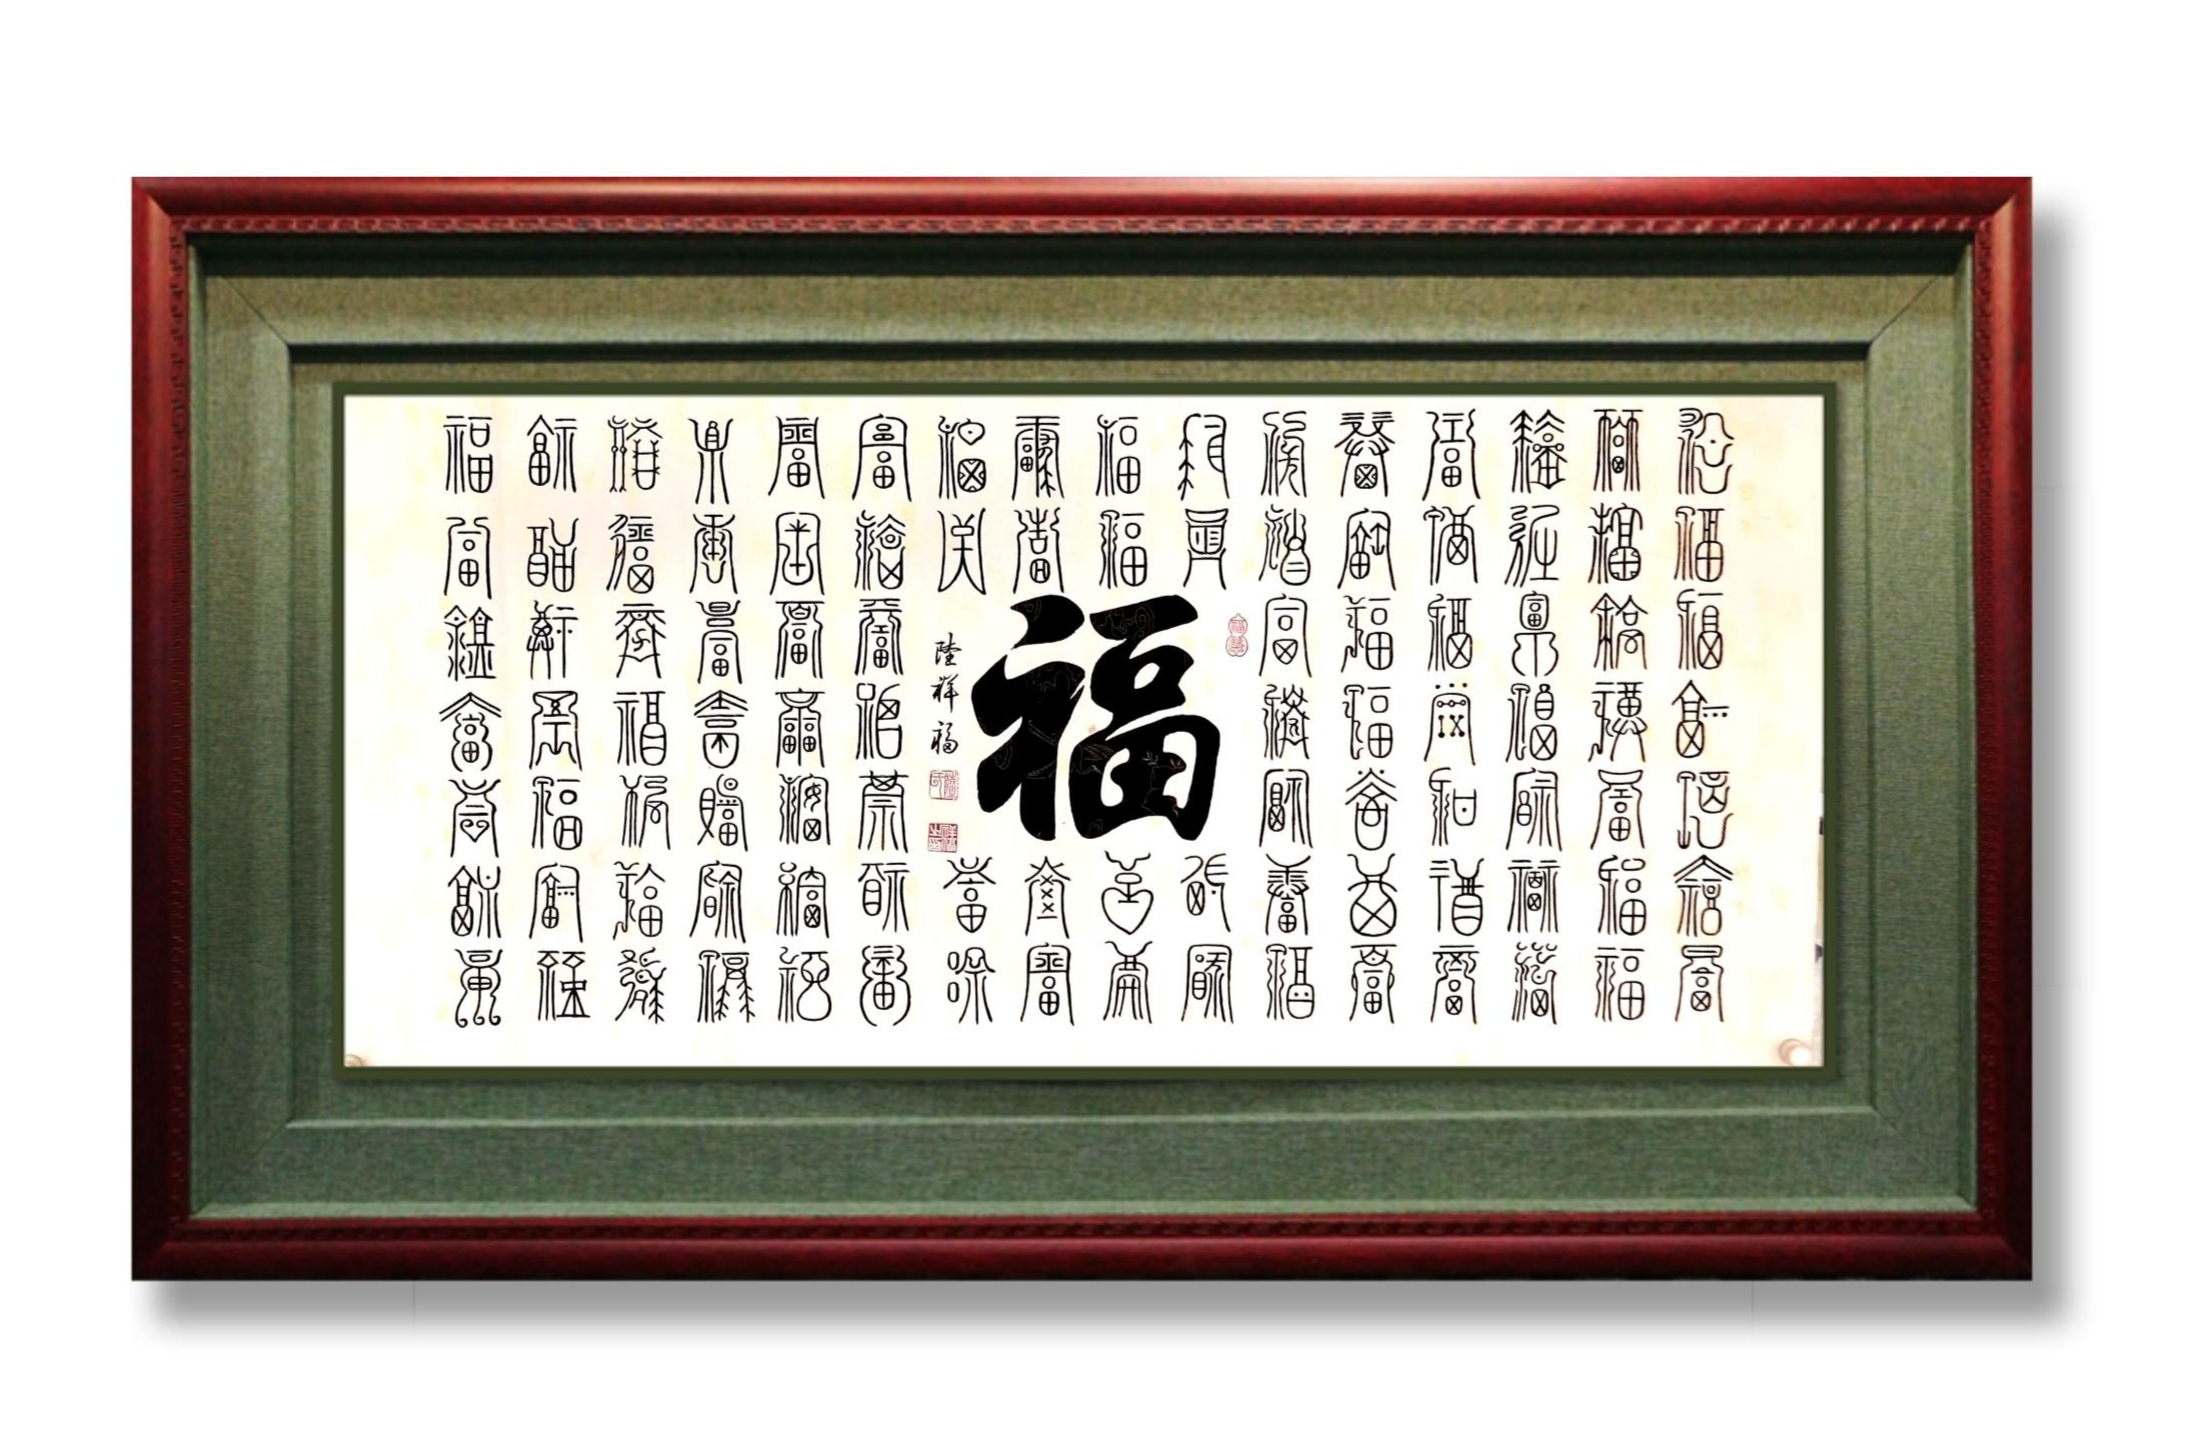 中国大众文化学会名人书画艺术发展委员会——陆祥福